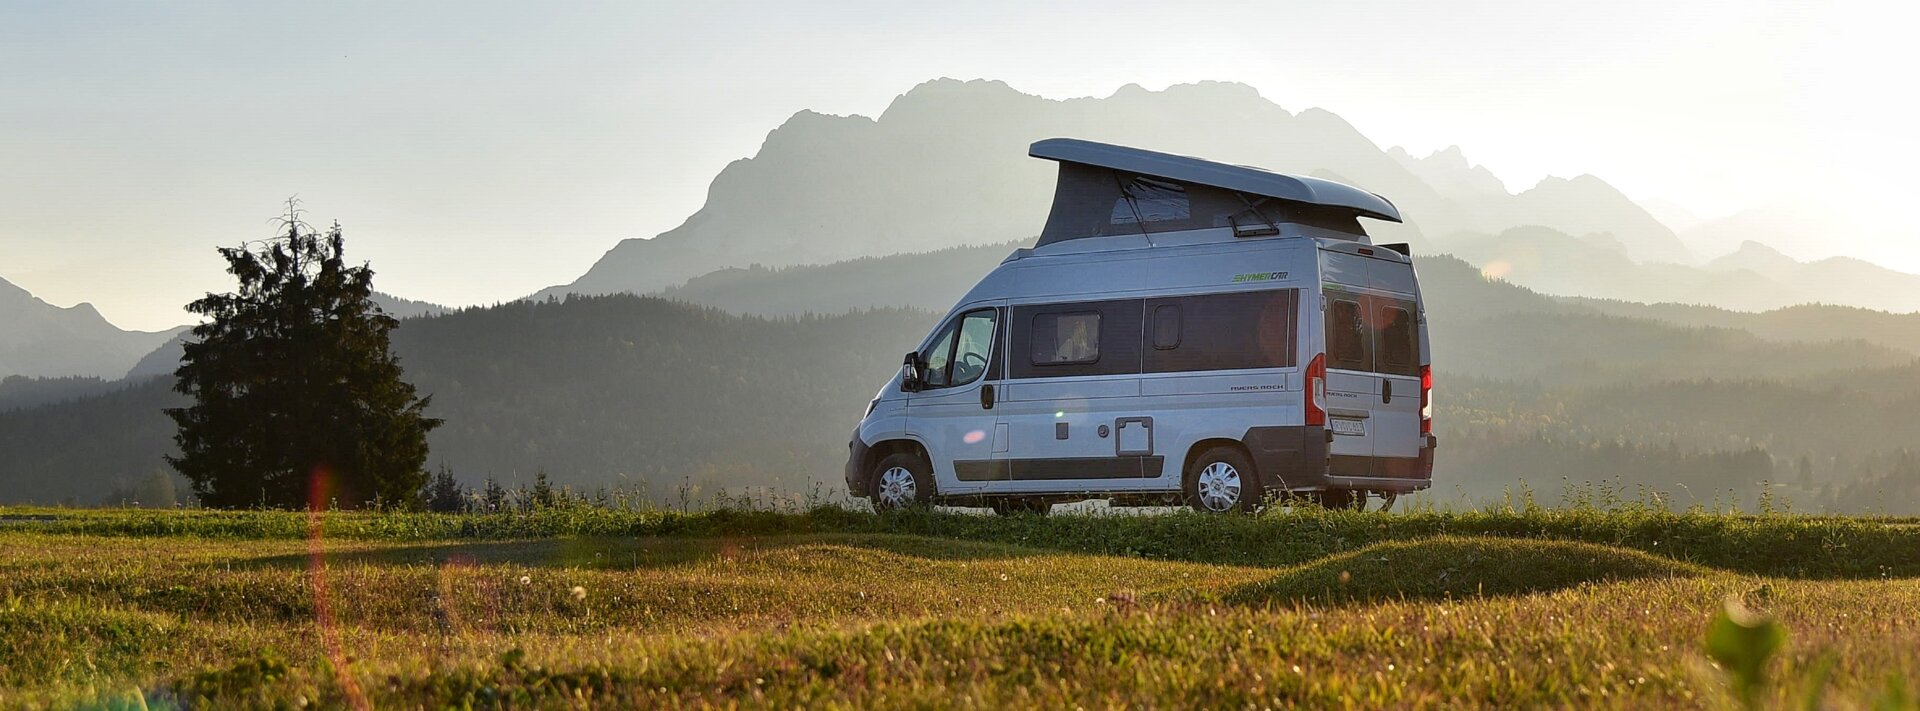 hymer camper van for sale